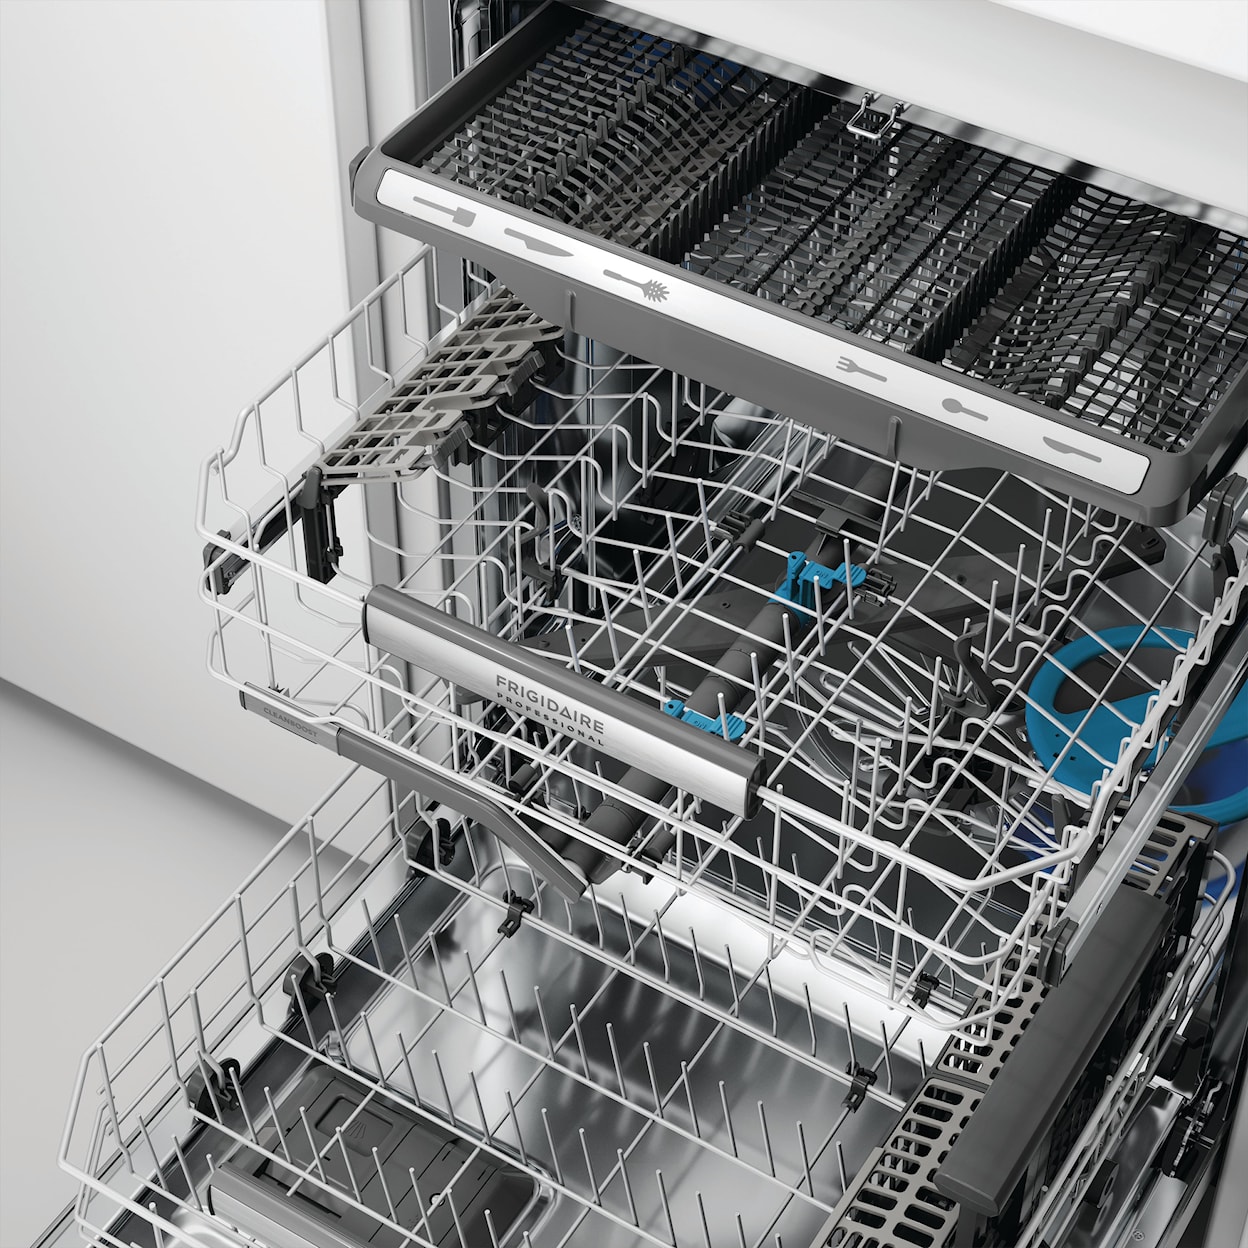 Frigidaire Dishwashers BI Fullsize Dishwasher - Stainless